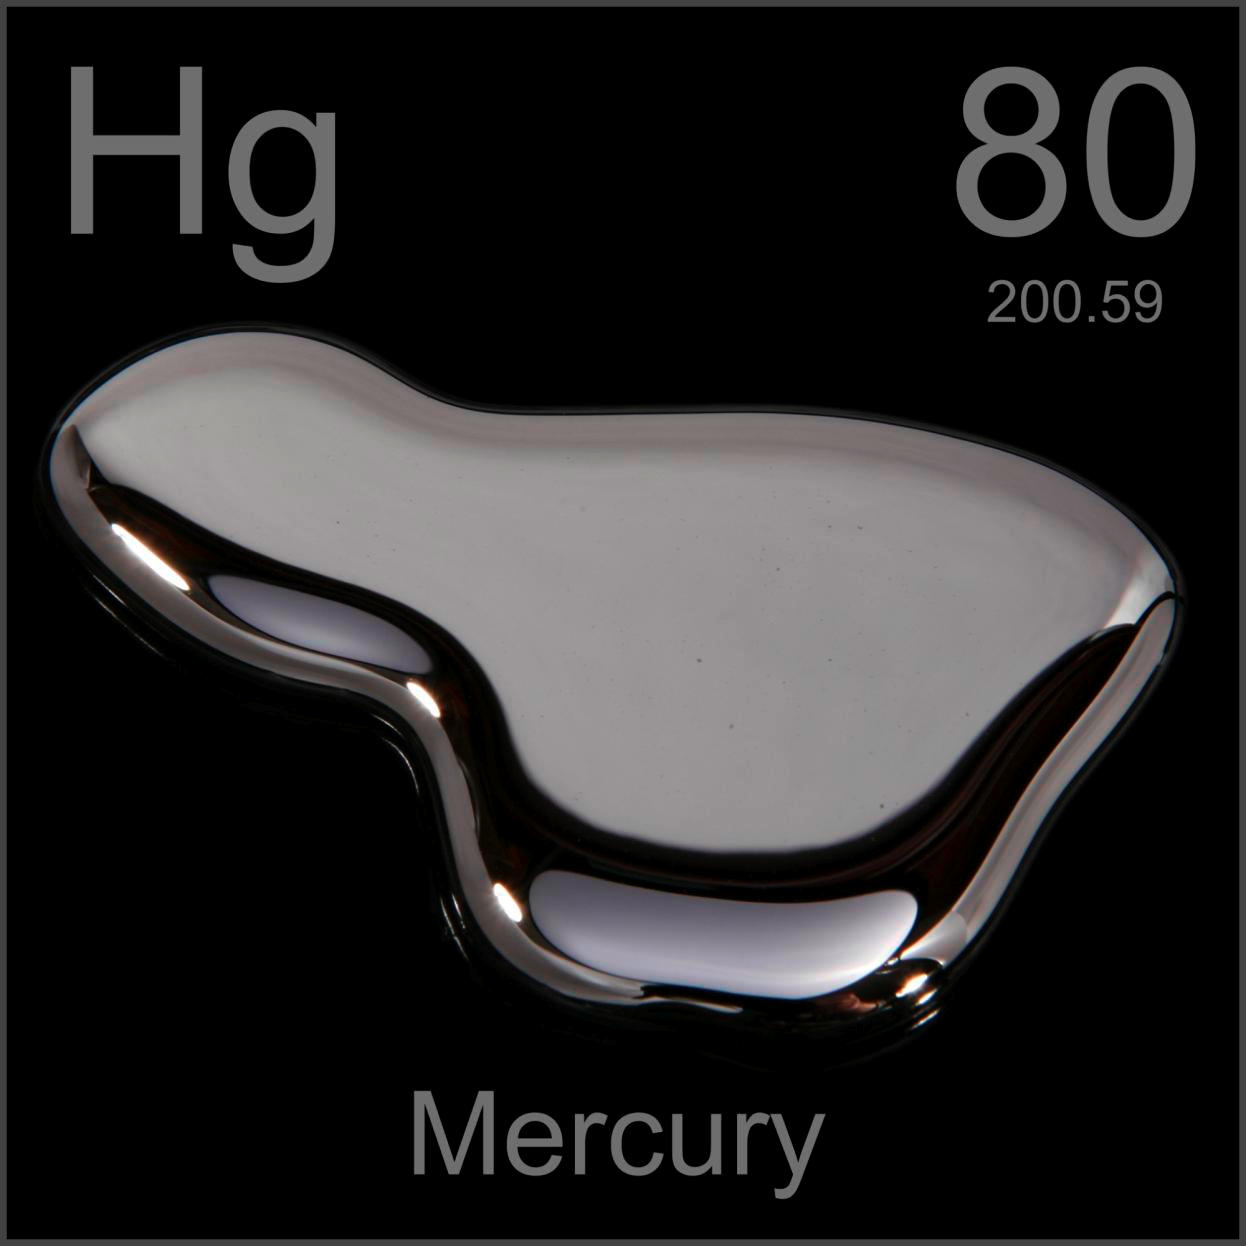 El mercurio es un elemento químico que tiene un número atómico 80 y un peso atómico 200.59, su símbolo es Hg